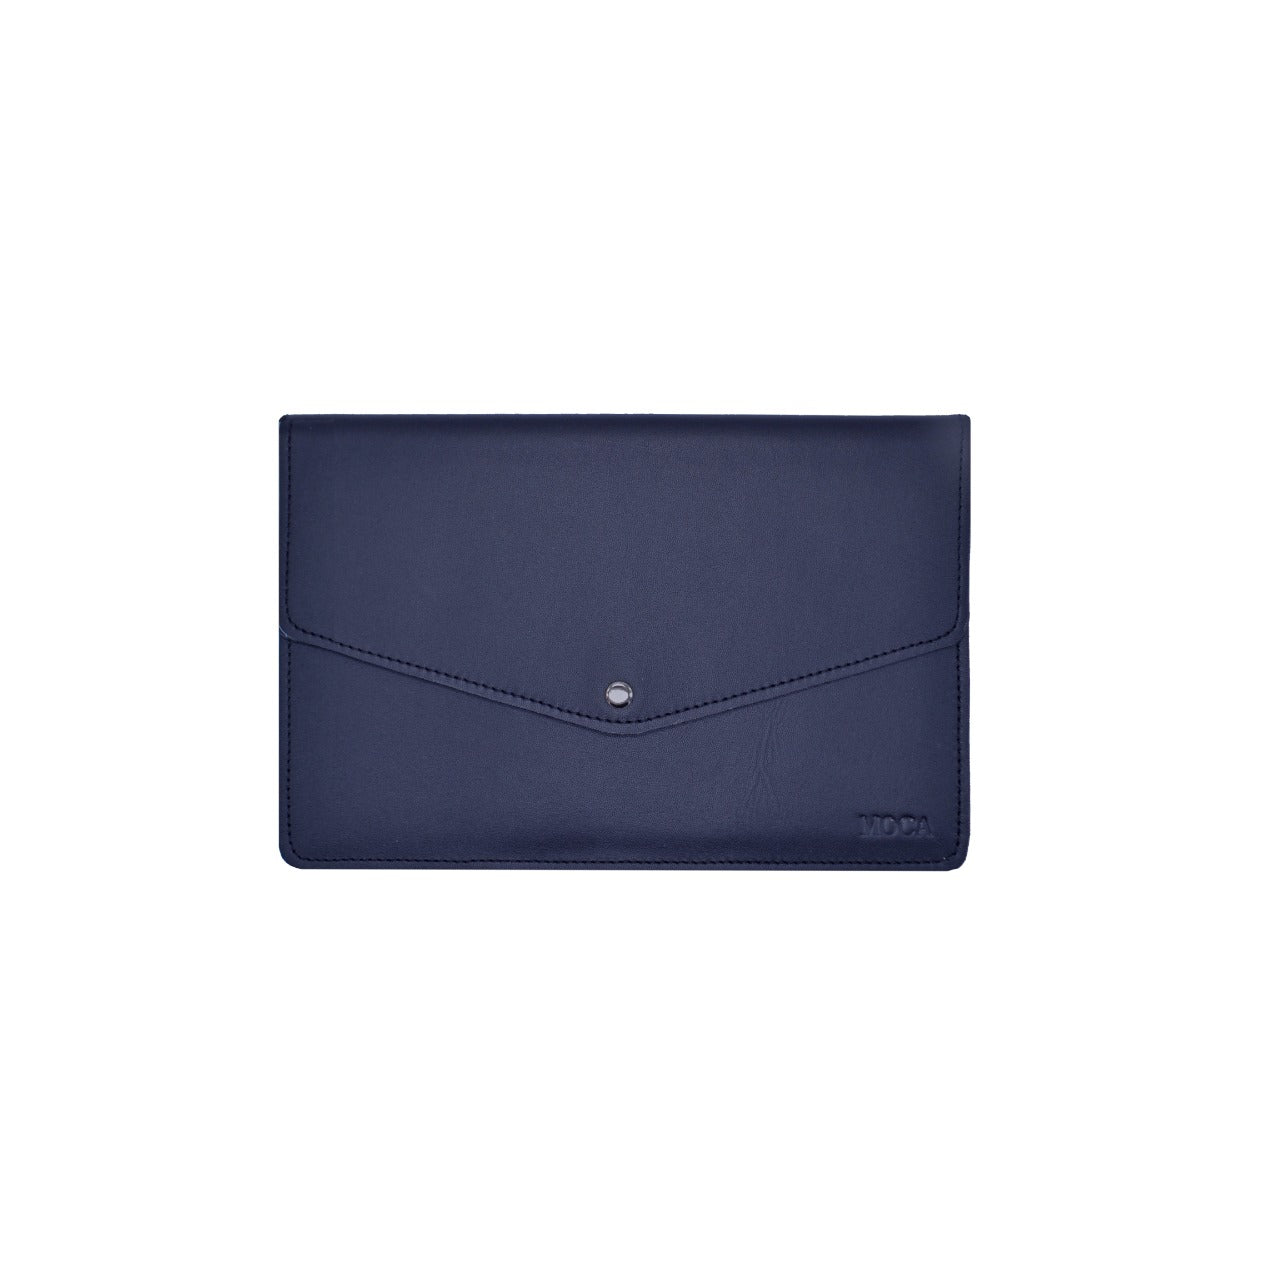 iPad cover de cuero azul